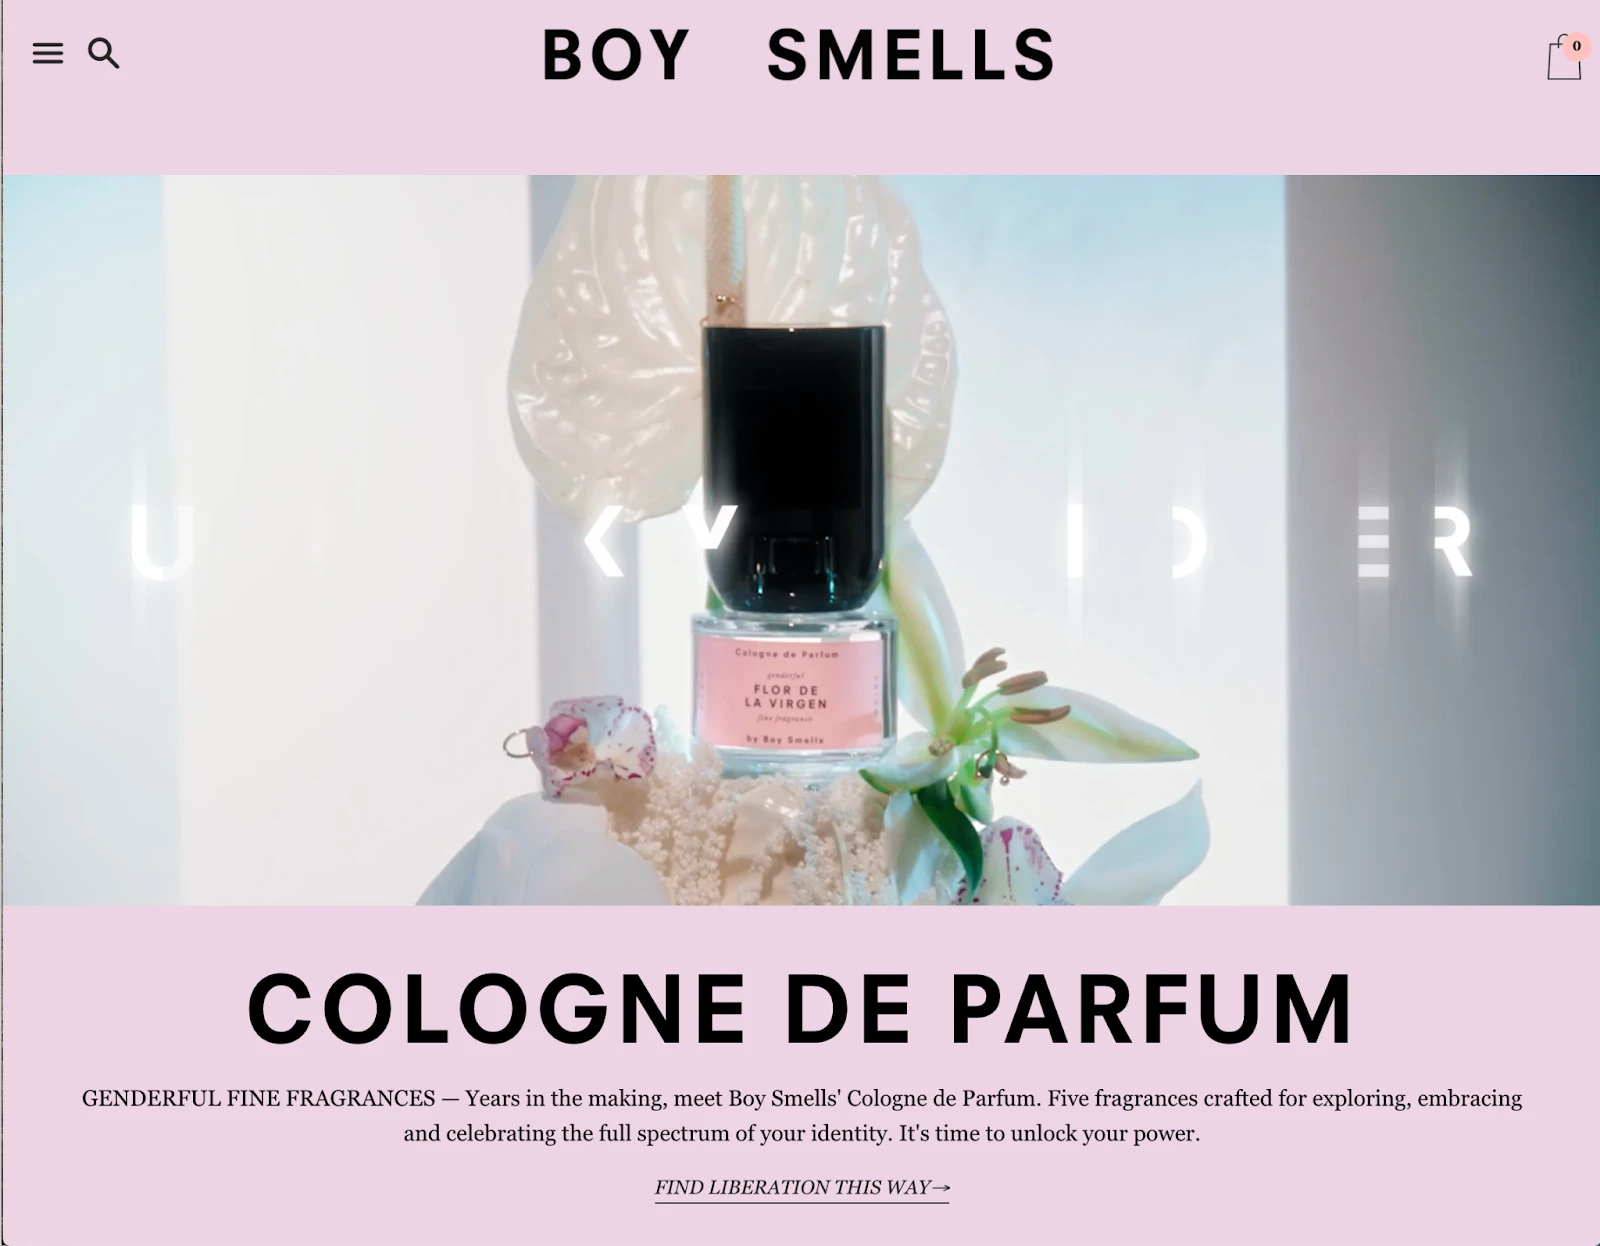 Boy Smells香水的品牌视觉形象包含了男性和女性气质